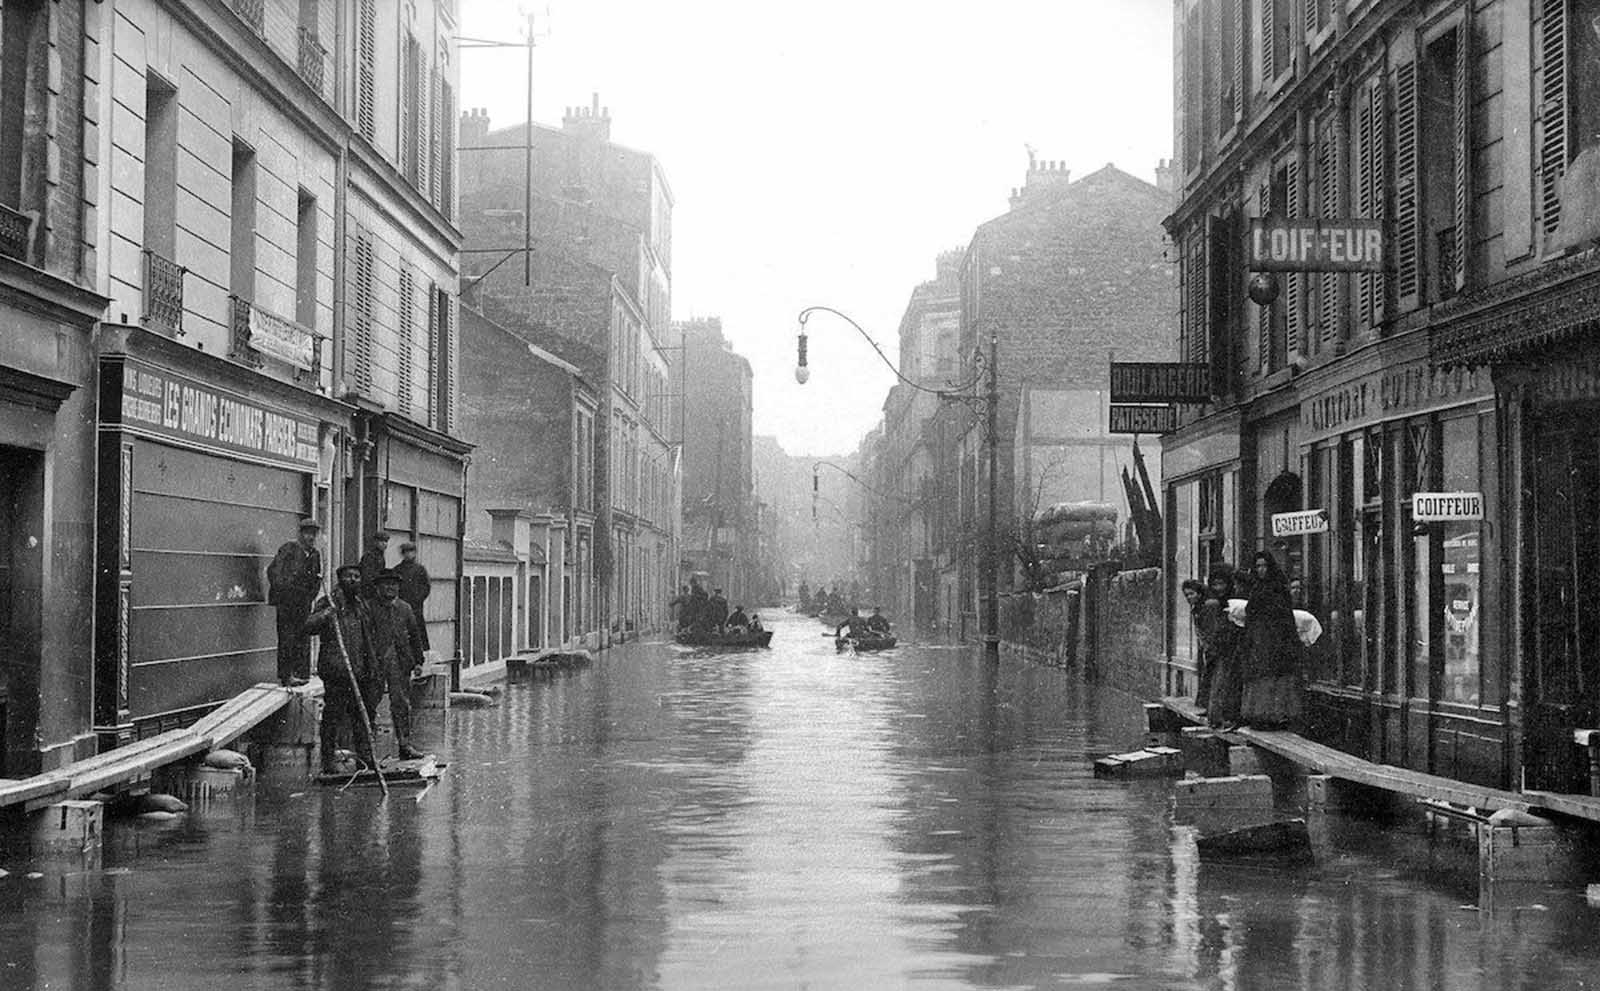 ย้อนรอยภาพในอดีตของเมืองปารีส ครั้งน้ำท่วมใหญ่ในปี 1910 ชาวเมืองจะรับมือกันอย่างไร?